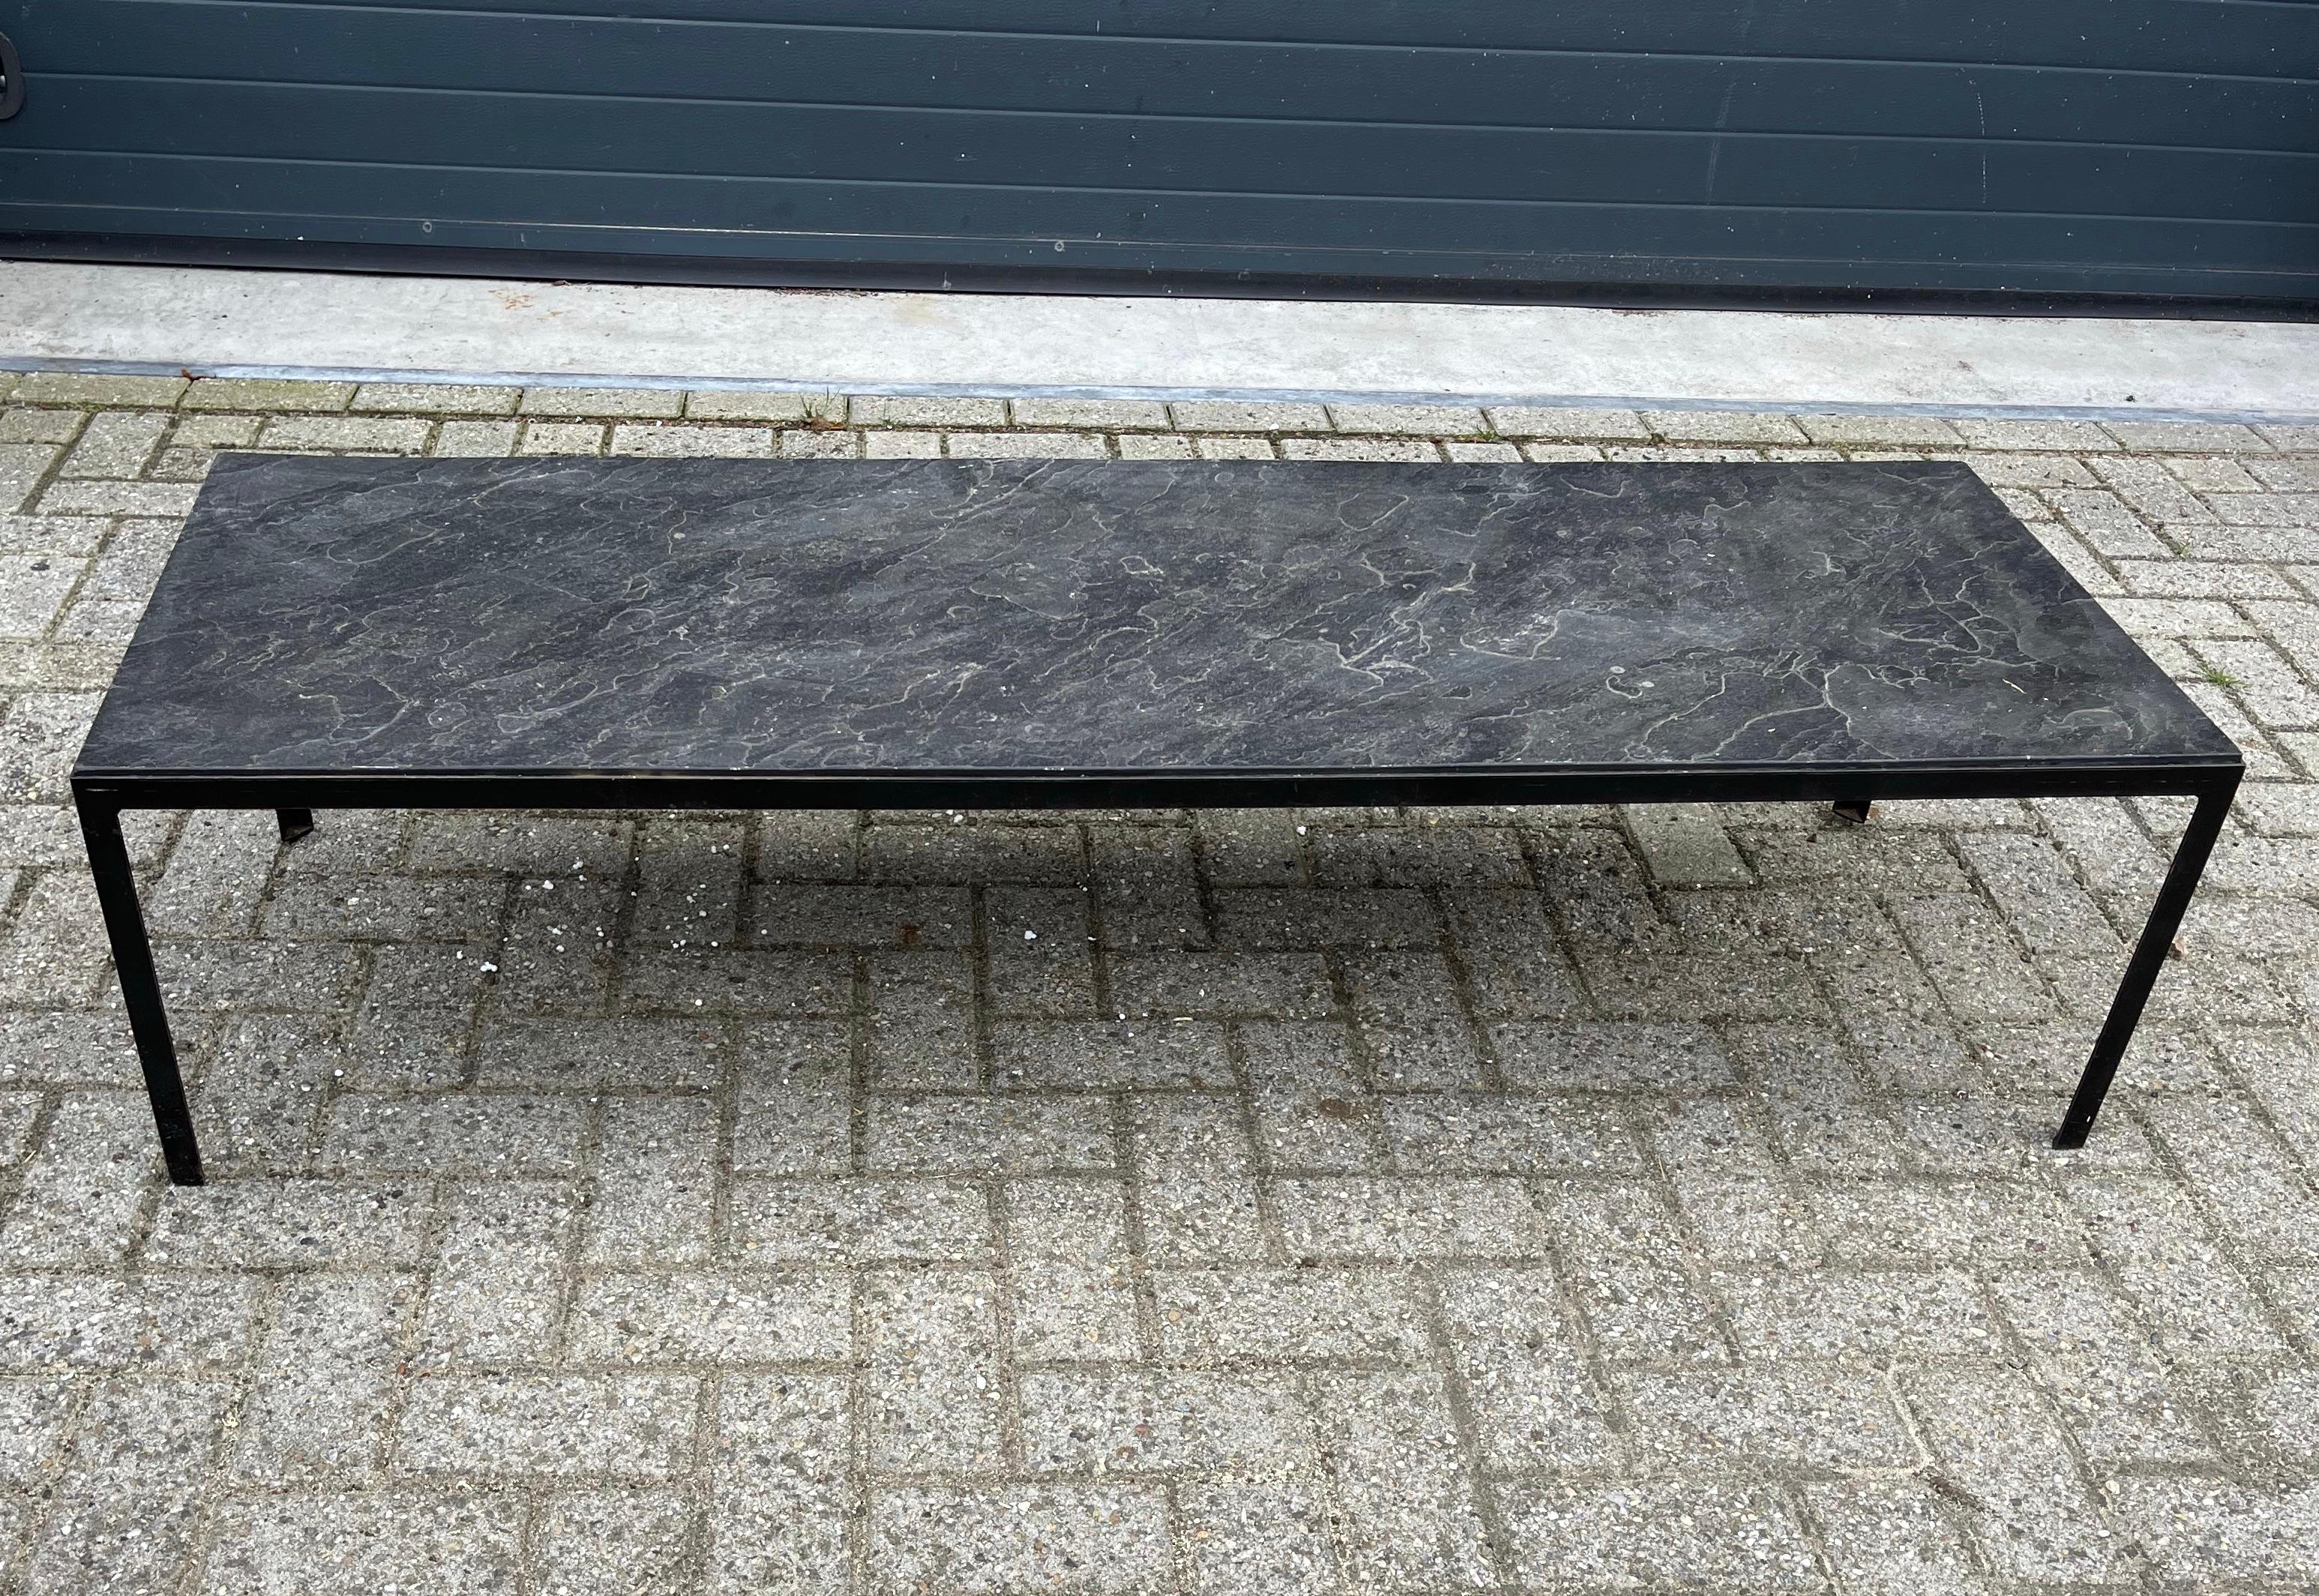 Une table basse rectangulaire, longue et pratique, au design épuré.

Cette table basse longue et de belle qualité est fabriquée uniquement à partir de matériaux naturels et vous ne pourriez pas souhaiter un spécimen plus durable. La base en fer